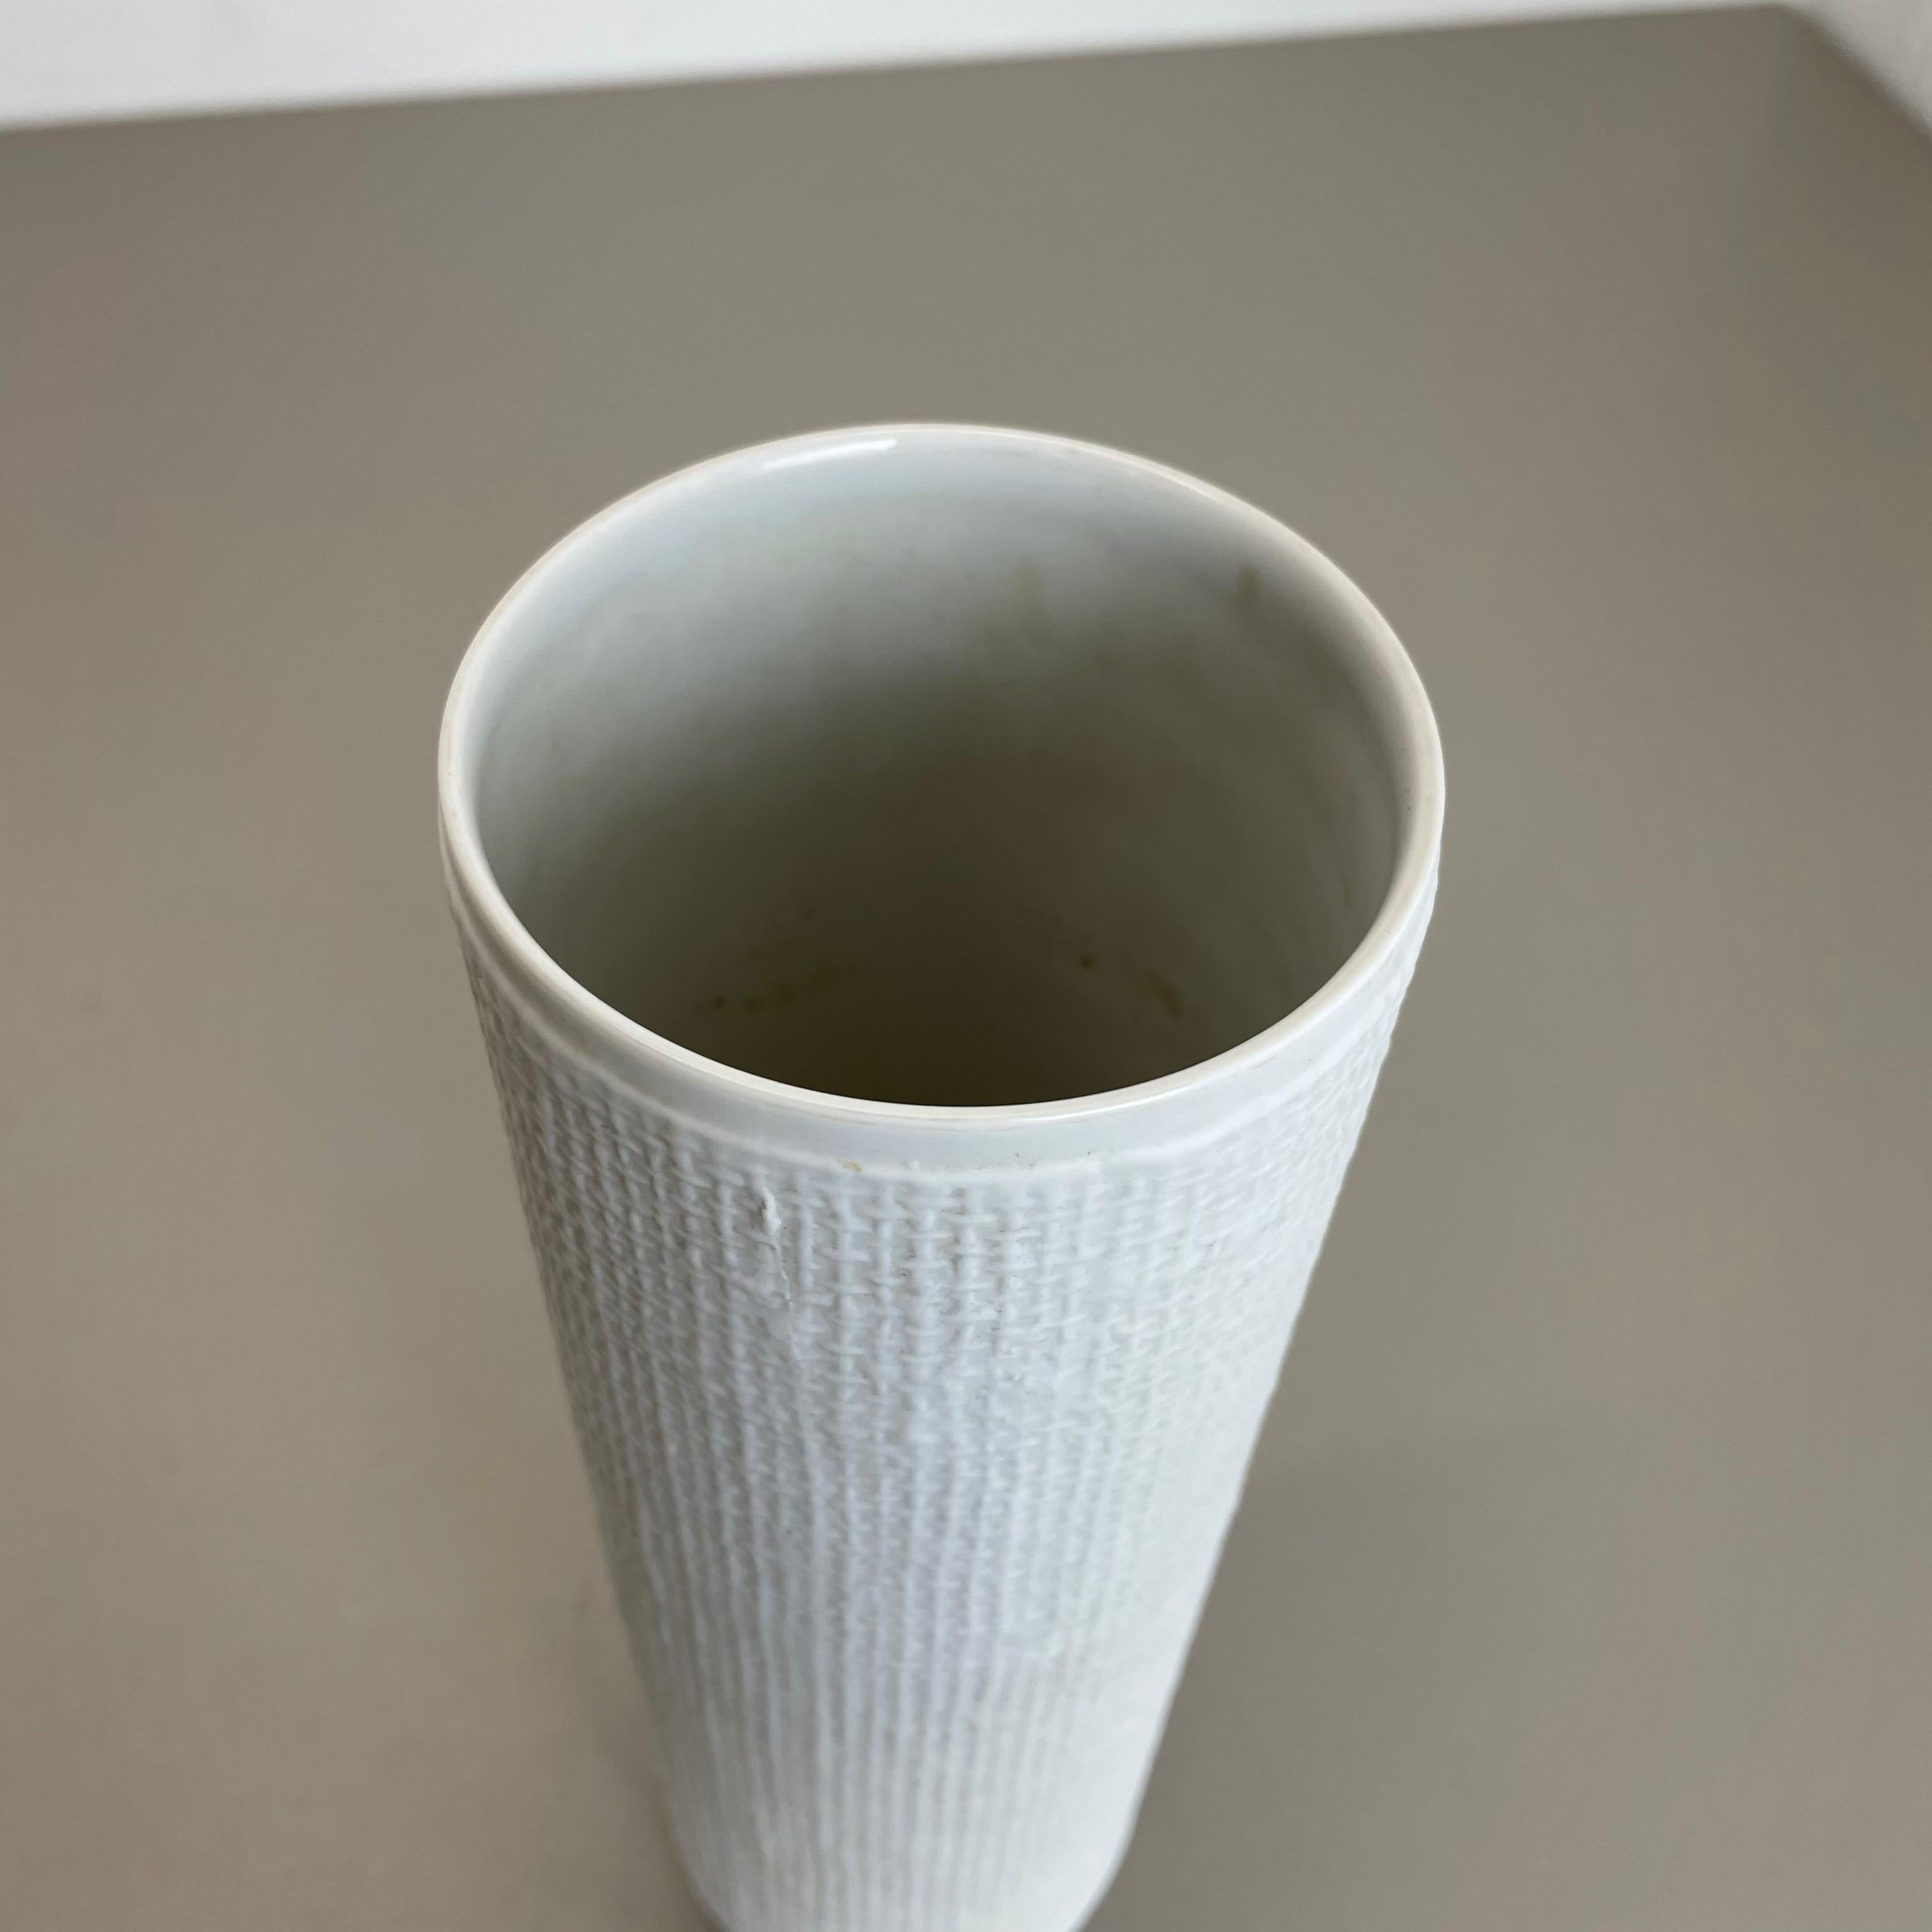 1970s OP Art Vase Porcelain Vase by Heinrich Fuchs for Hutschenreuther, Germany For Sale 1